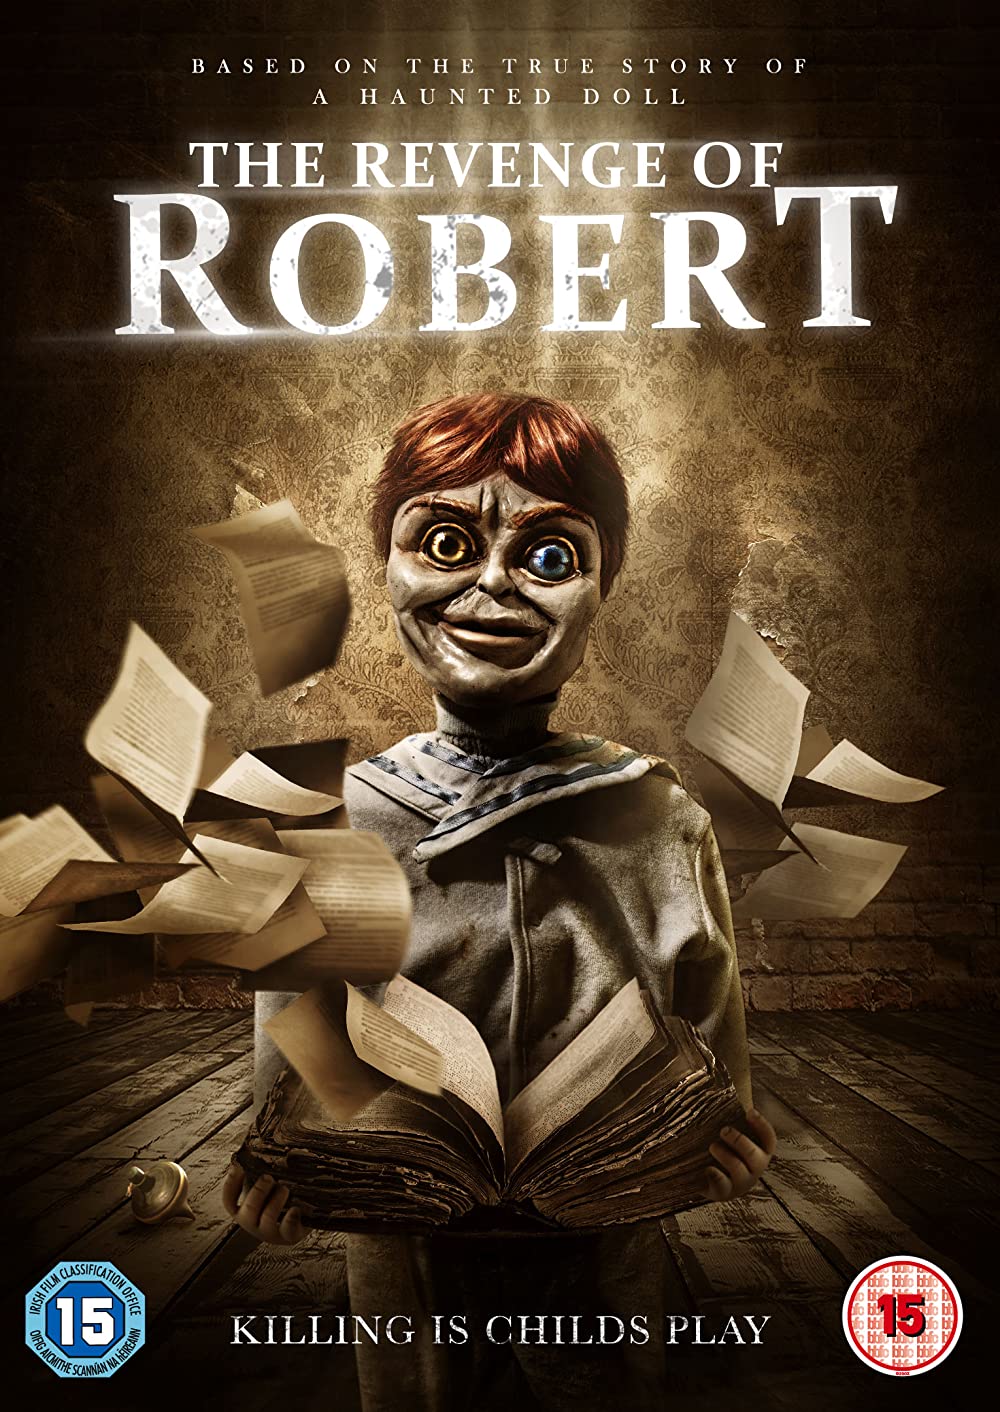 ดูหนังออนไลน์ฟรี The Revenge of Robert (2018) การแก้แค้นของโรเบิร์ต หนังเต็มเรื่อง หนังมาสเตอร์ ดูหนังHD ดูหนังออนไลน์ ดูหนังใหม่